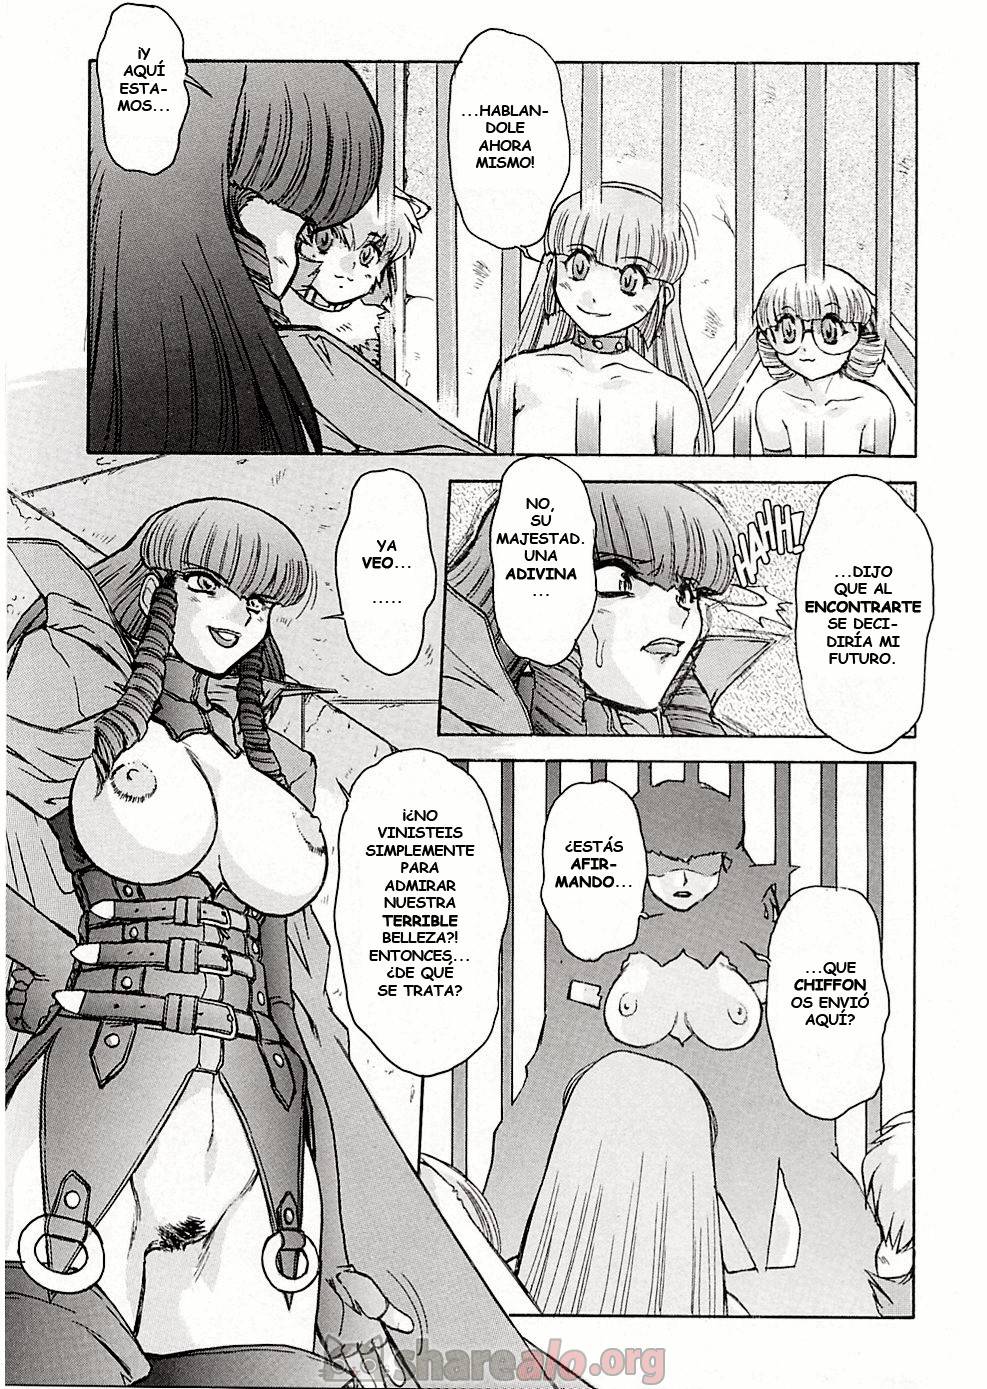 Alice Extreme (Parte #7 y #8) - 7 - Comics Porno - Hentai Manga - Cartoon XXX